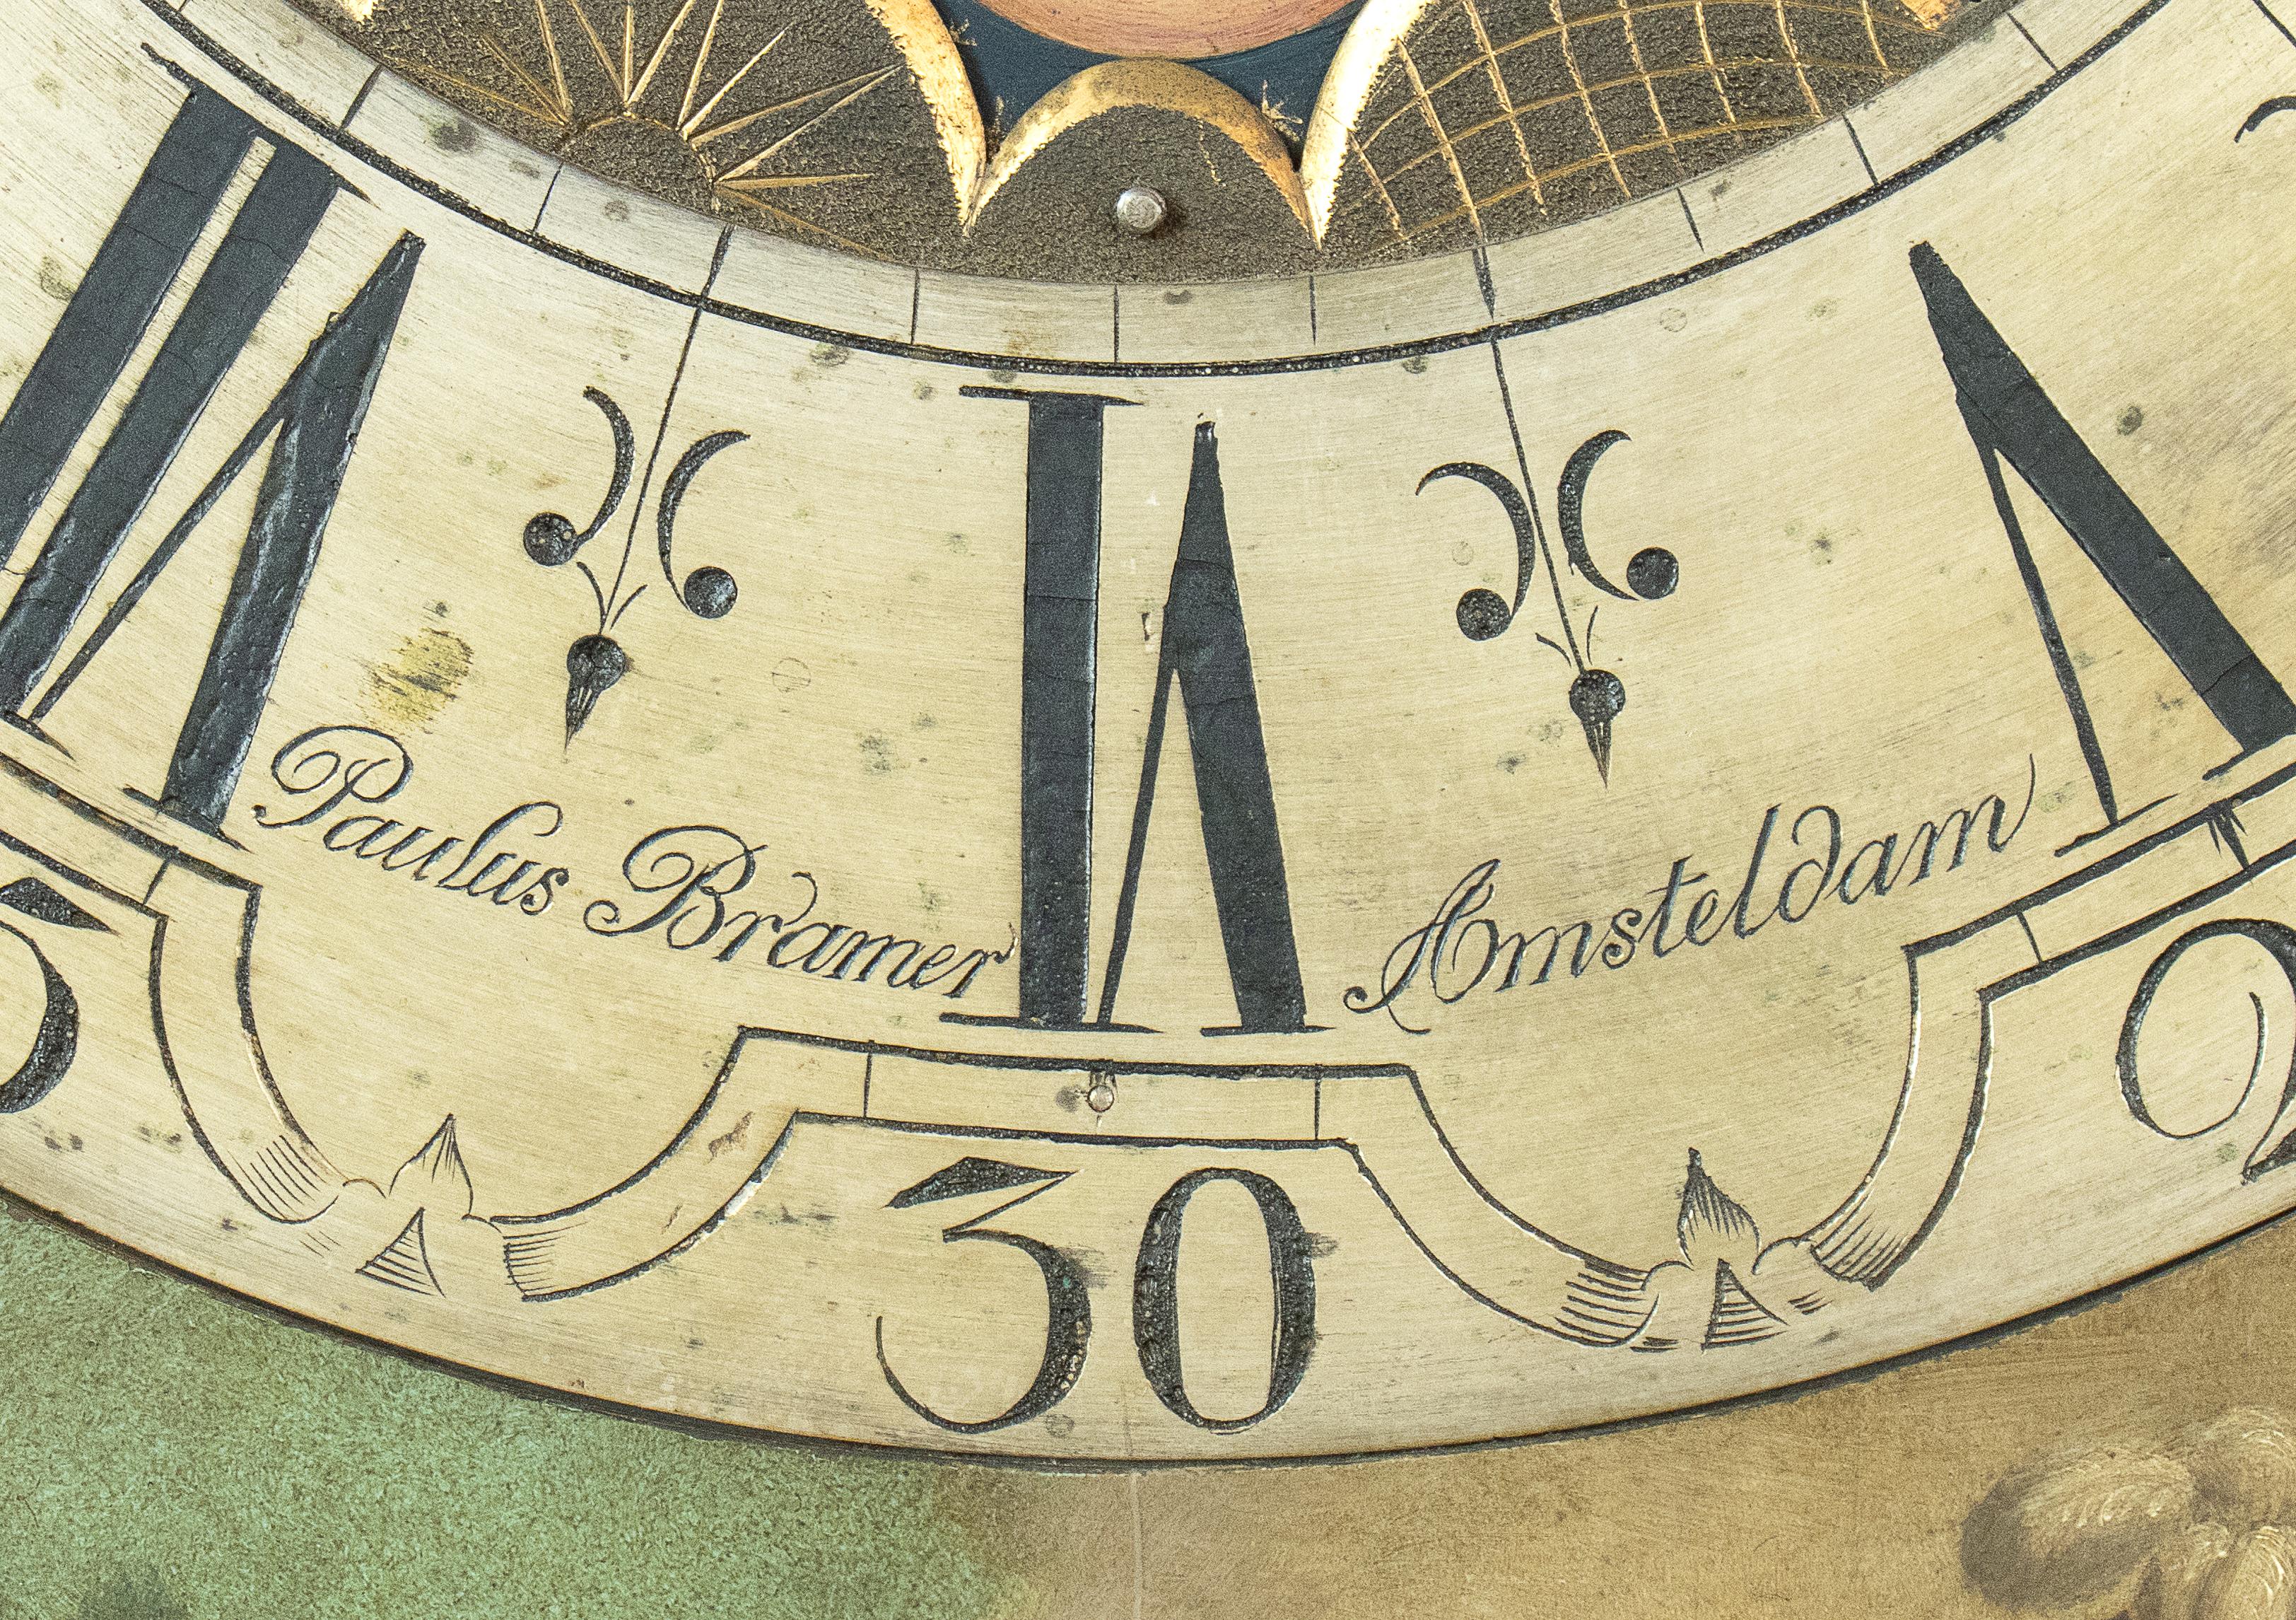 Eine seltene und prächtige Standuhr - Niederlande, Amsterdam, signiert PAULUS BRAMER (ca. 1730-1760)
Gehäuse aus Nussbaumholz mit Intarsien aus Obstholz mit floralen Motiven, oberer Teil mit mythologischer Szene bemalt, rundes Zifferblatt signiert